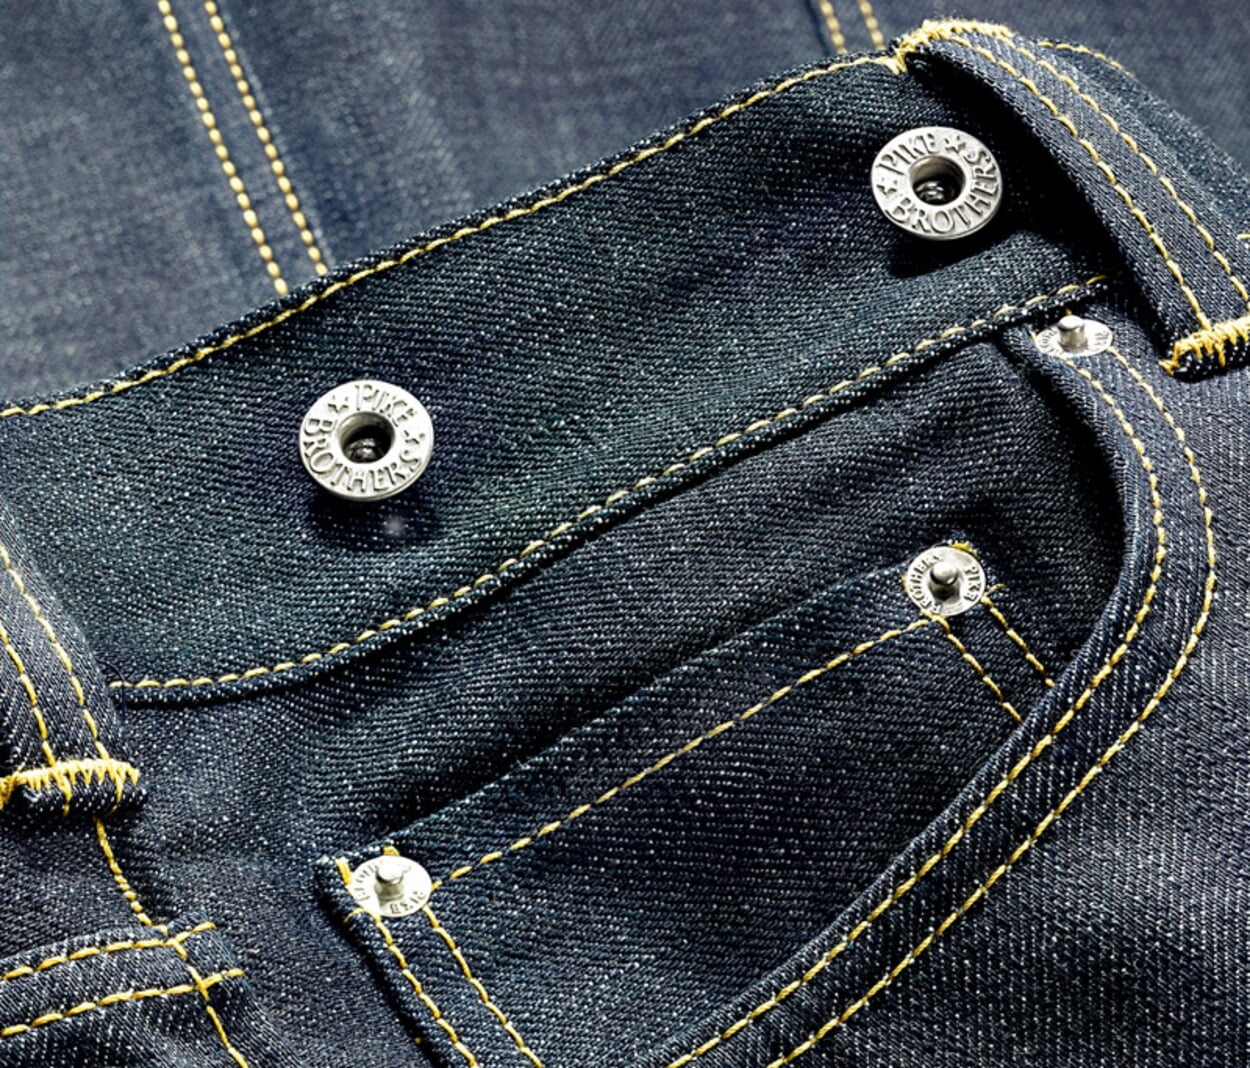 Die Reihenfolge unserer besten Manufactum jeans